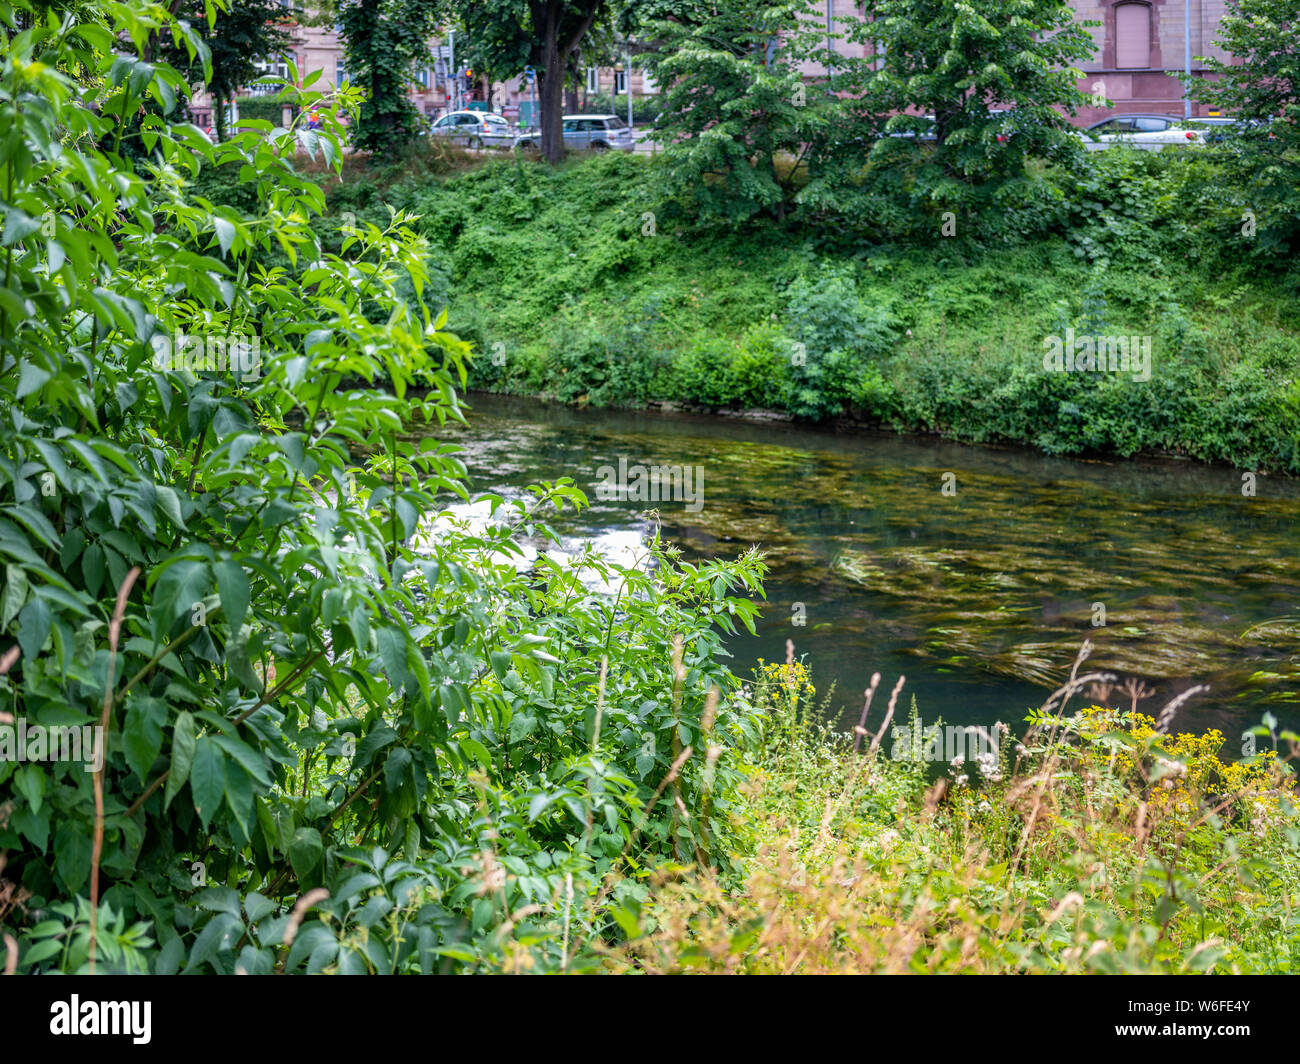 La végétation verte sur les bords de la rivière Aar, quartier Neustadt, Strasbourg, Alsace, France, Europe, Banque D'Images